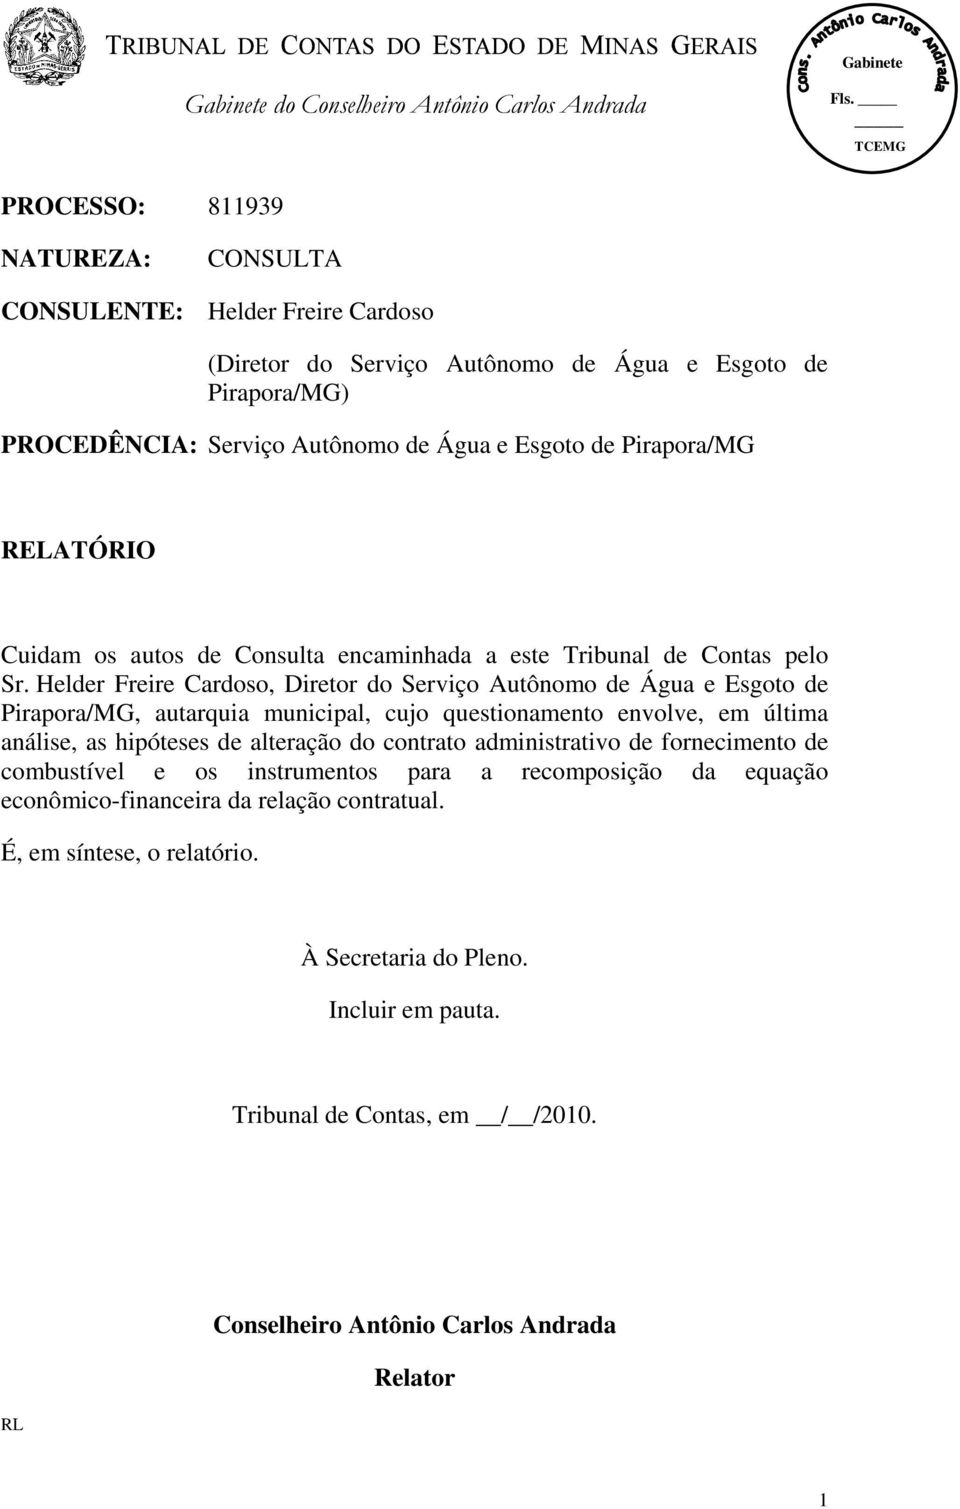 Helder Freire Cardoso, Diretor do Serviço Autônomo de Água e Esgoto de Pirapora/MG, autarquia municipal, cujo questionamento envolve, em última análise, as hipóteses de alteração do contrato